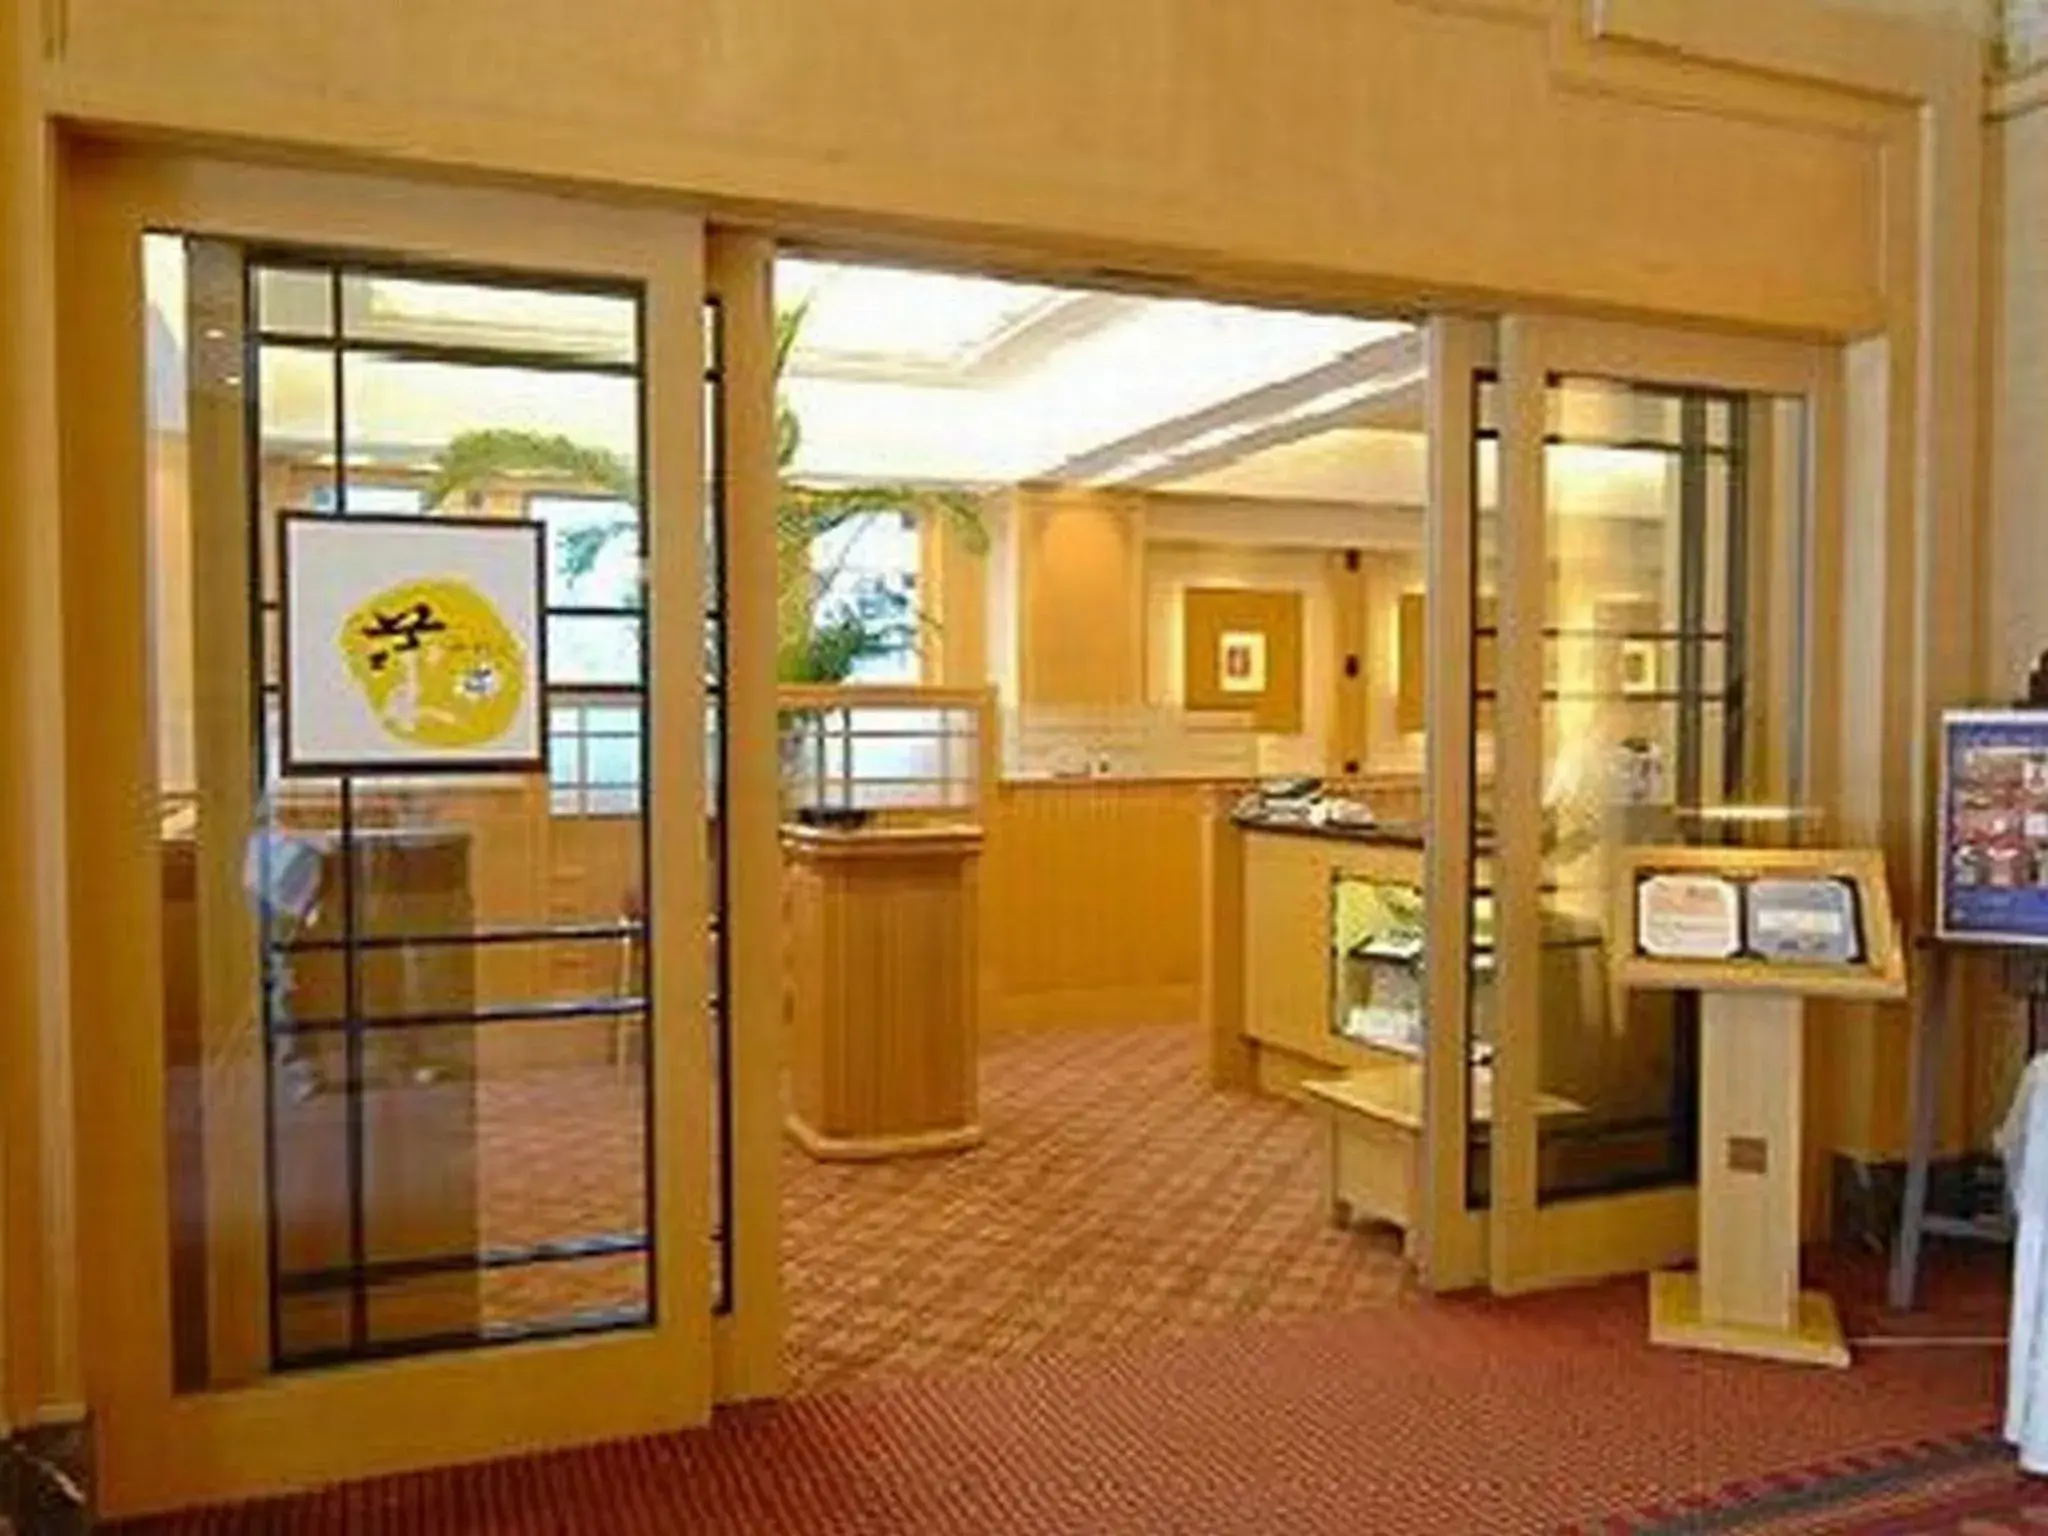 Lobby or reception in Crest Hotel Kashiwa